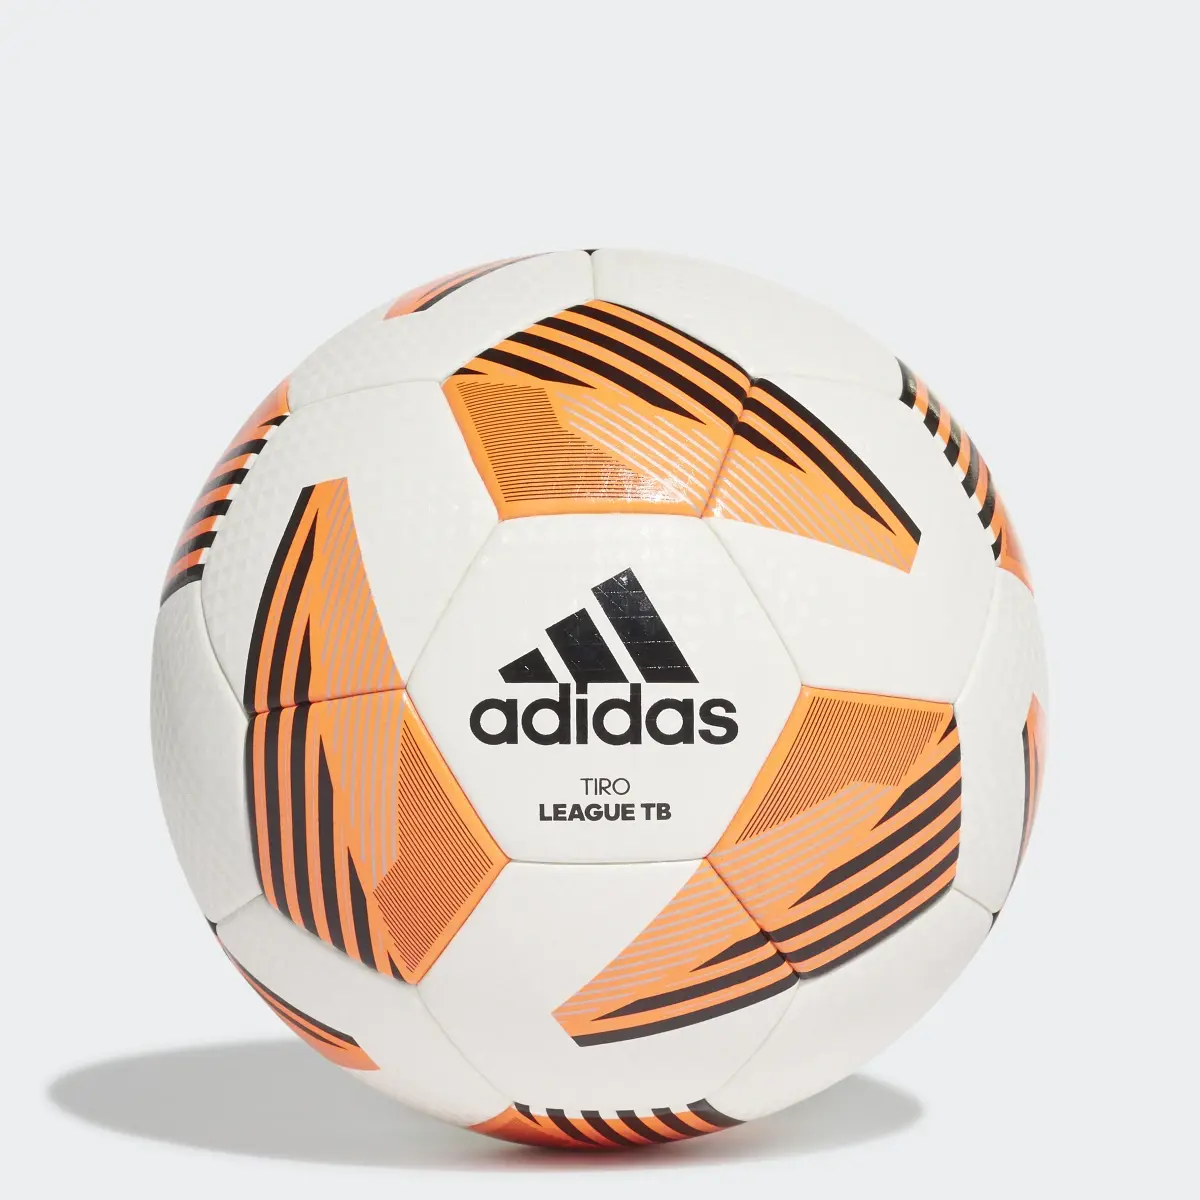 Adidas Tiro League TB Ball. 1